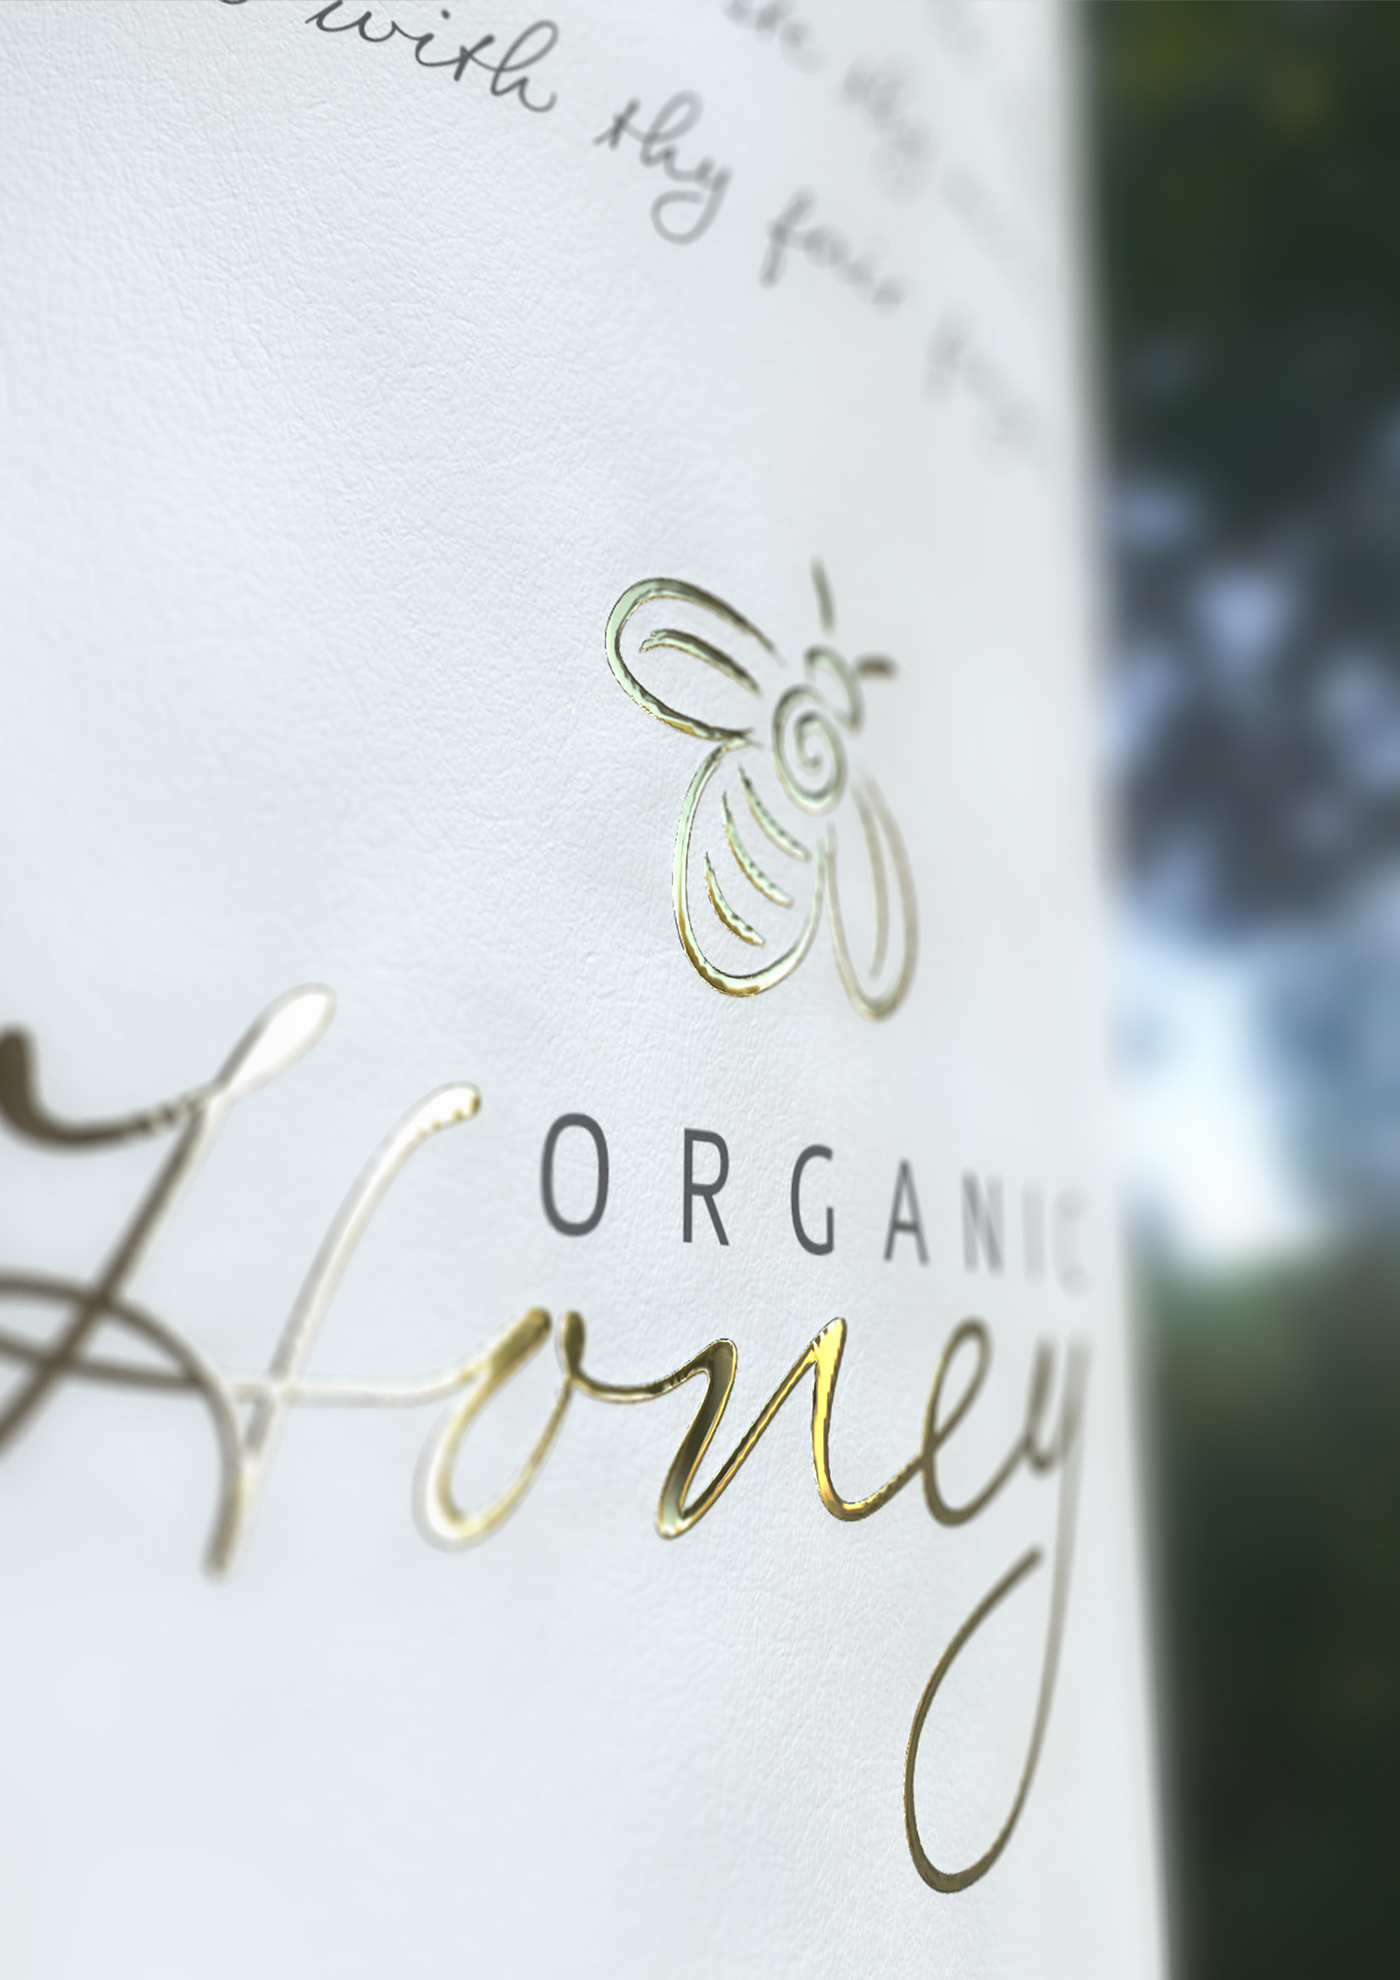 Marcel Buerkle johannesburg south africa Organic Honey packaging packaging design concept 3D renders glass Circum Punkt Design honey design concept logo bee organic natural